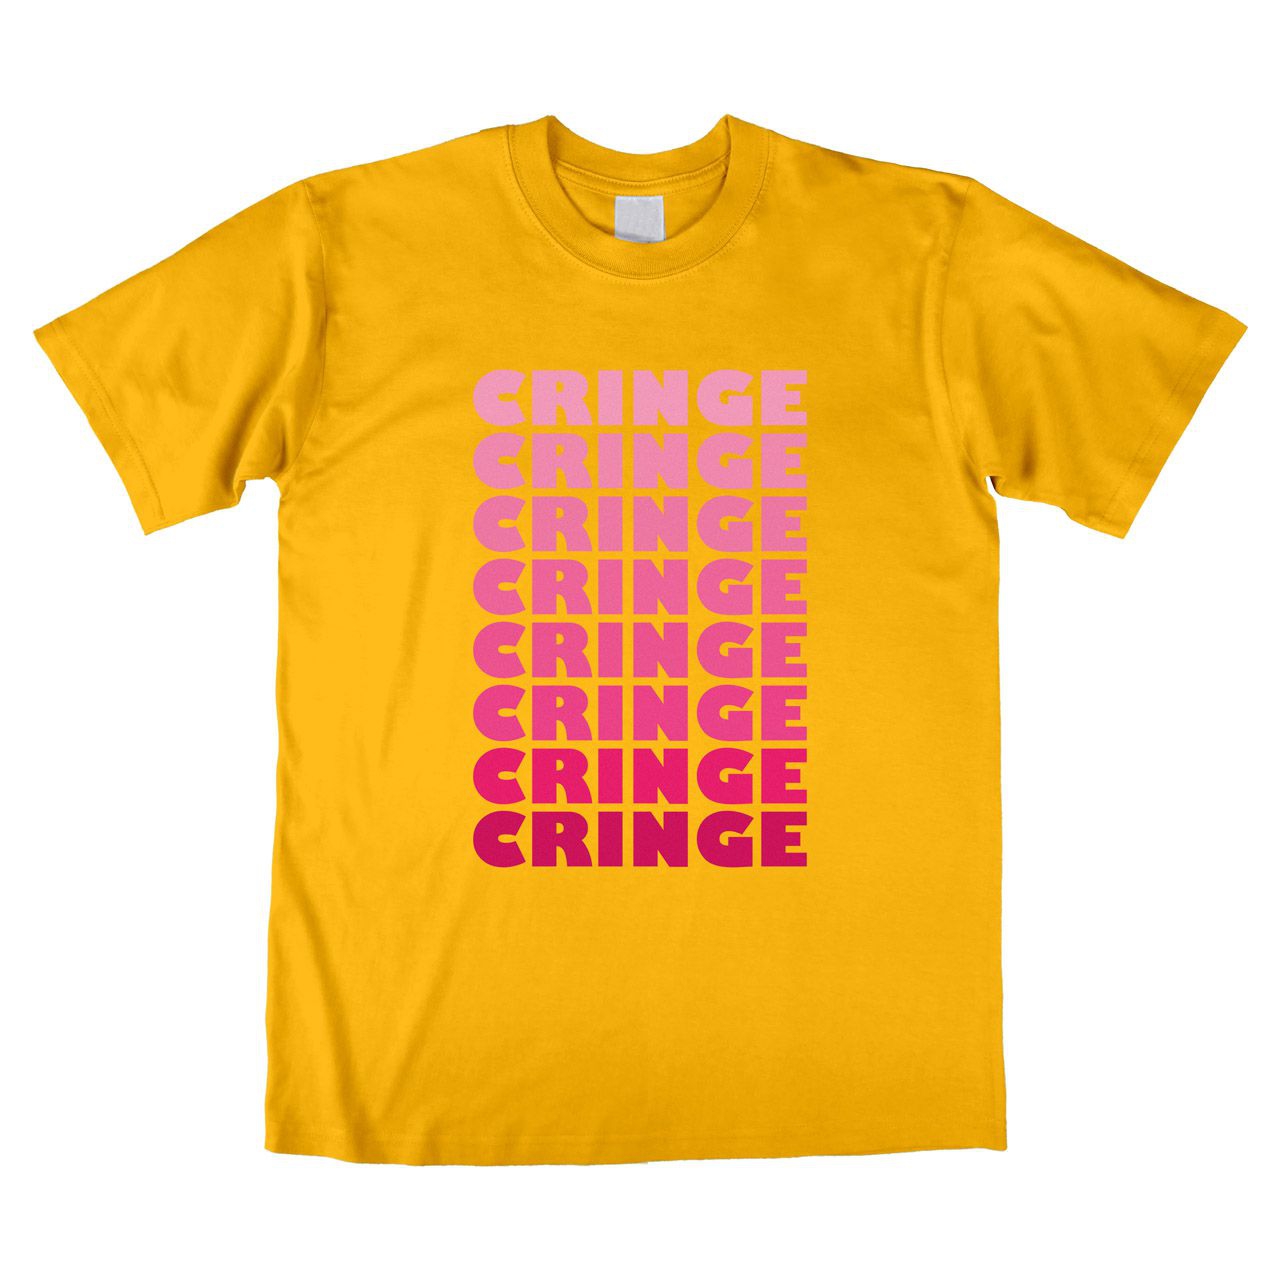 Cringe Unisex T-Shirt gelb Large